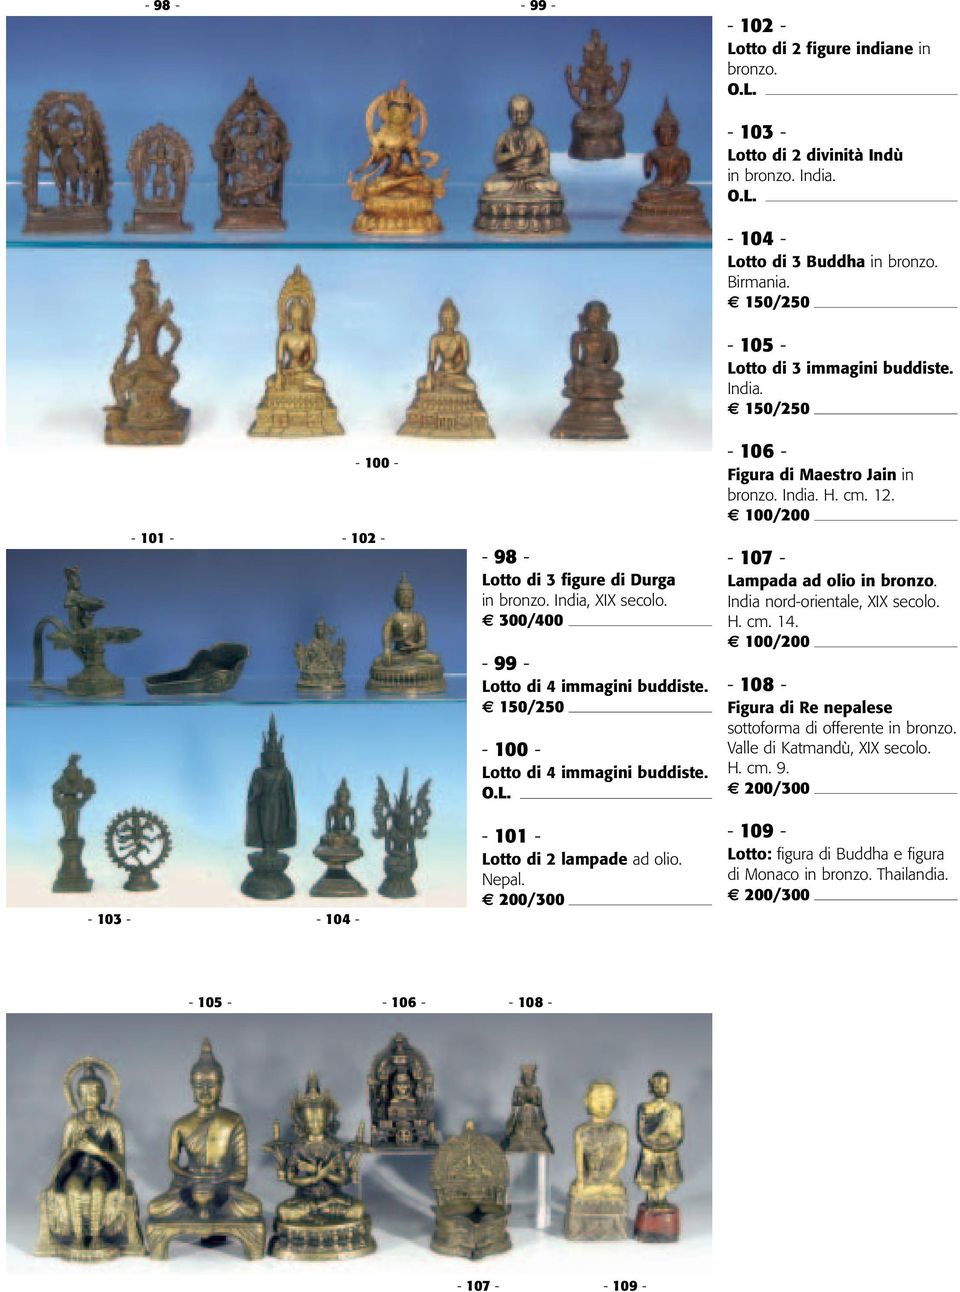 - 99 - Lotto di 4 immagini buddiste. - 100 - Lotto di 4 immagini buddiste. - 107 - Lampada ad olio in bronzo. India nord-orientale, H. cm. 14.